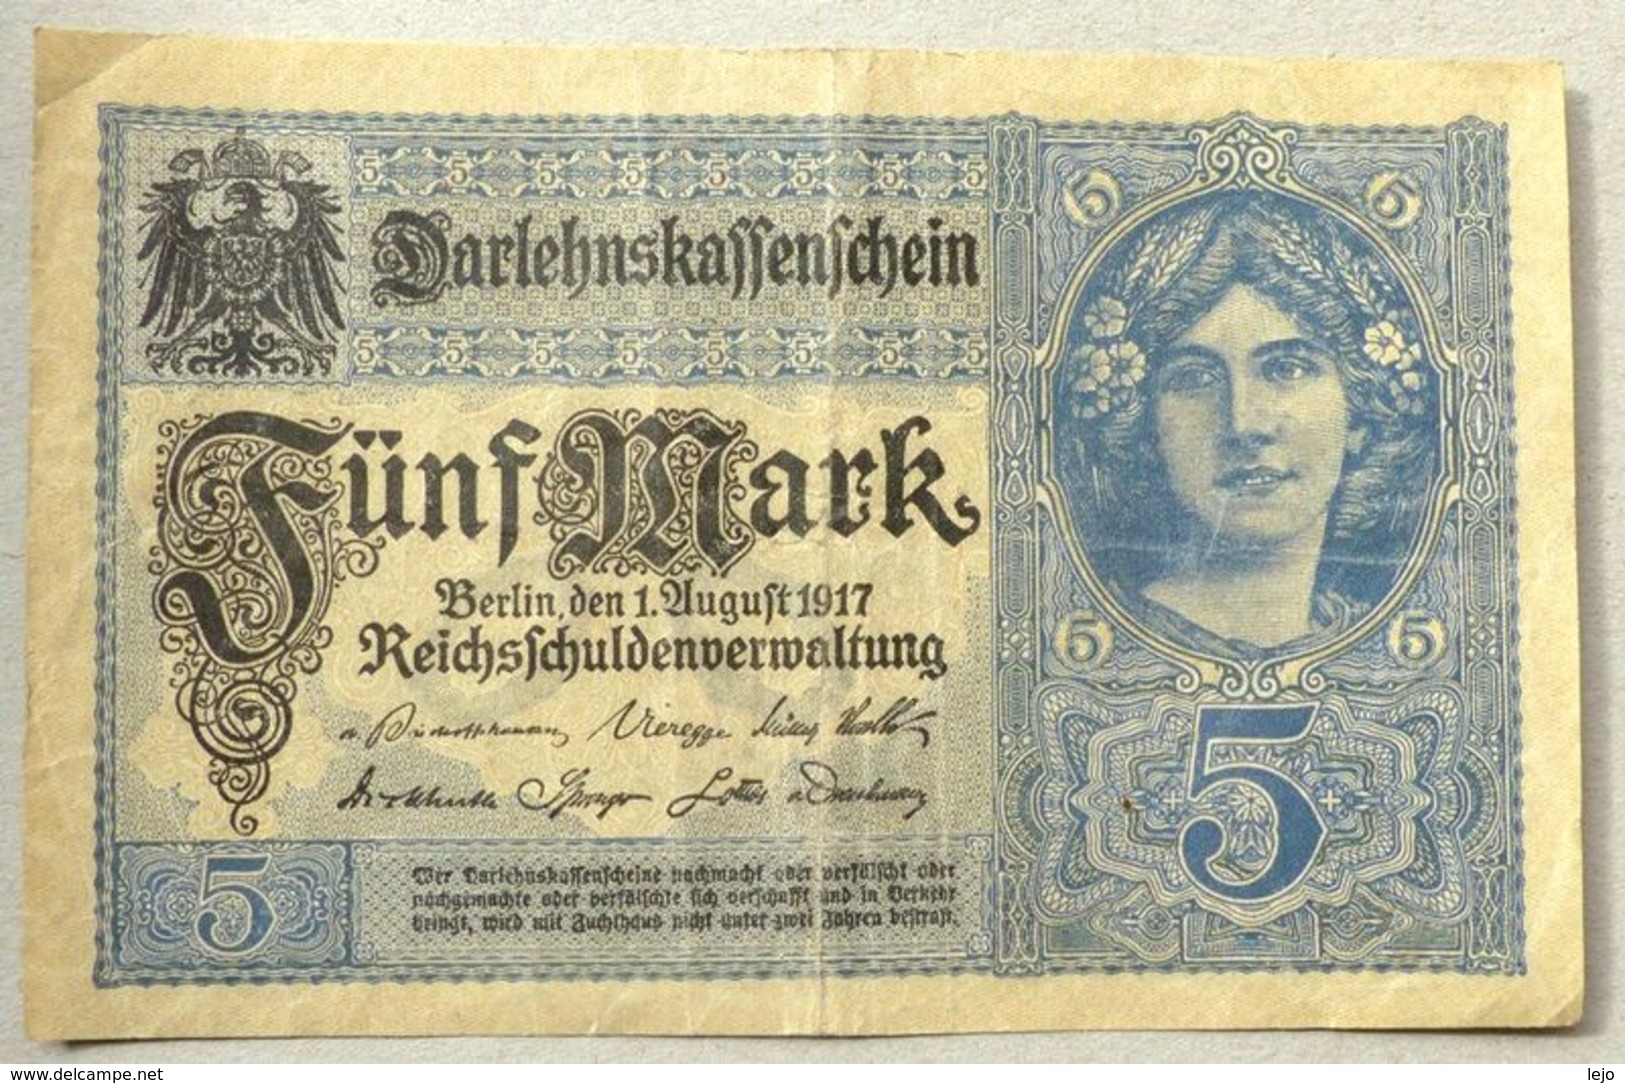 Darlehnkassenschein 5 Mark 01-08-1917 - Bundeskassenschein